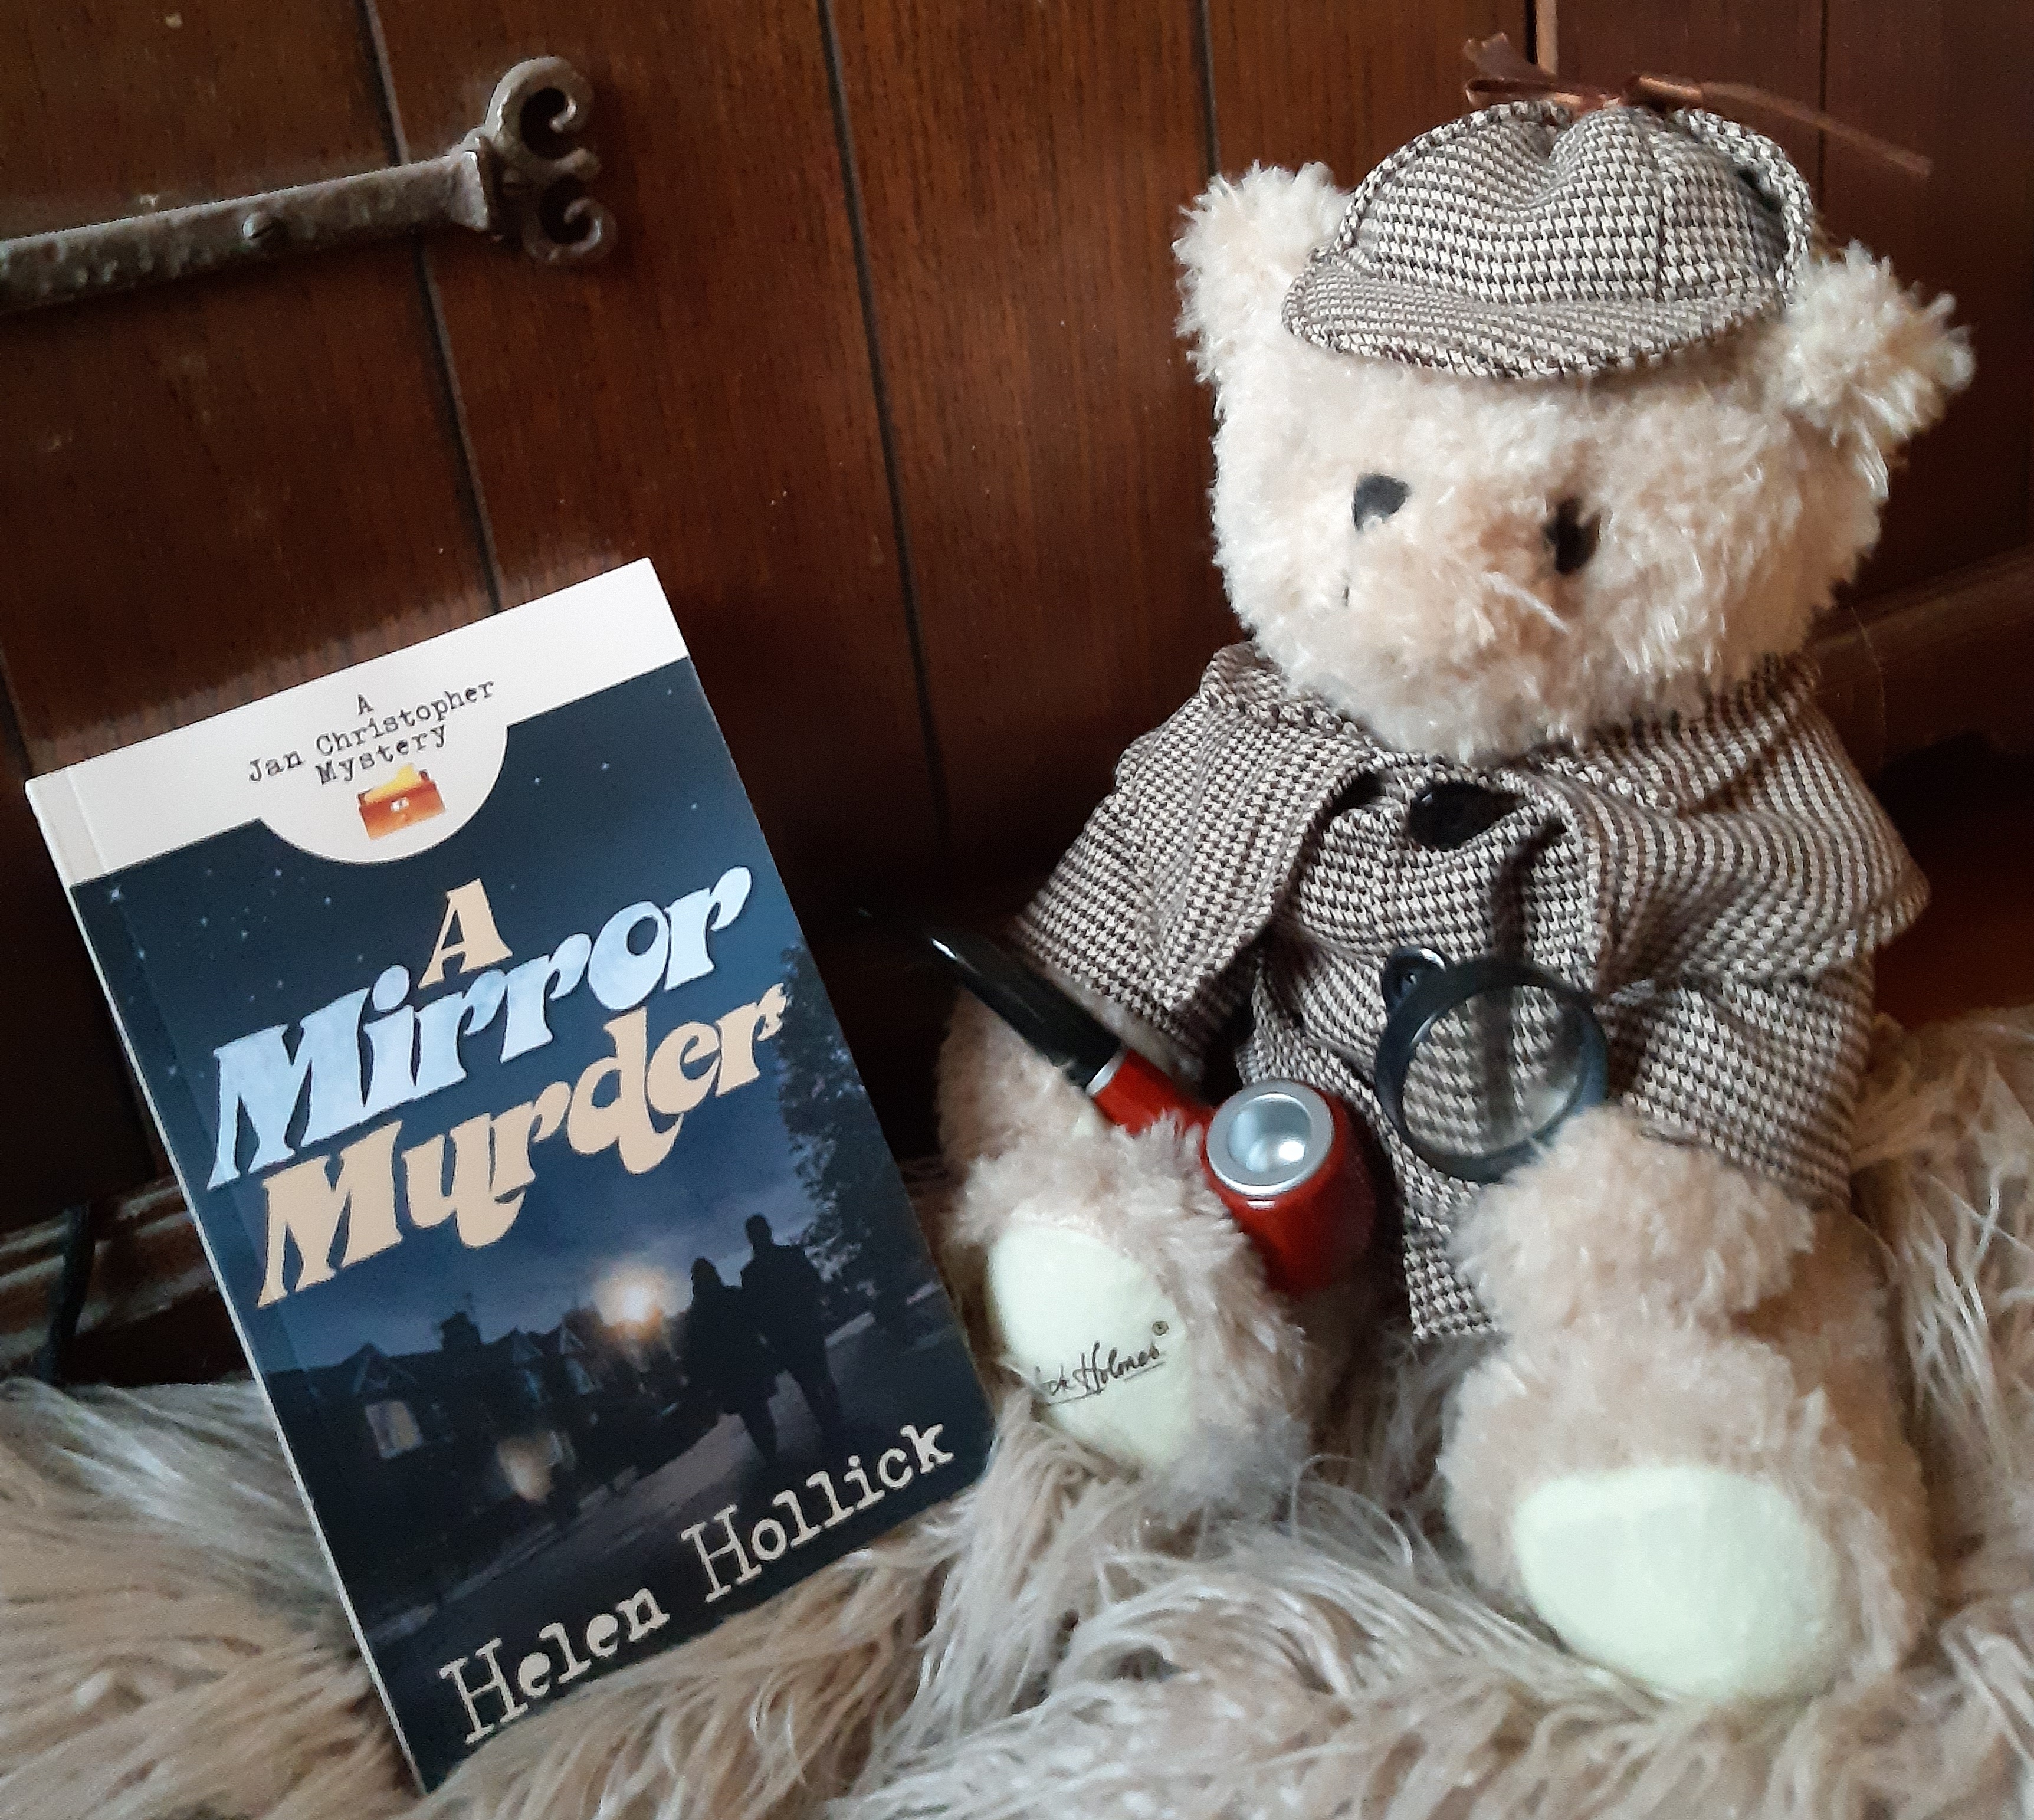 Image of "A Mirror Murder" with Sherlock Holmes teddy bear